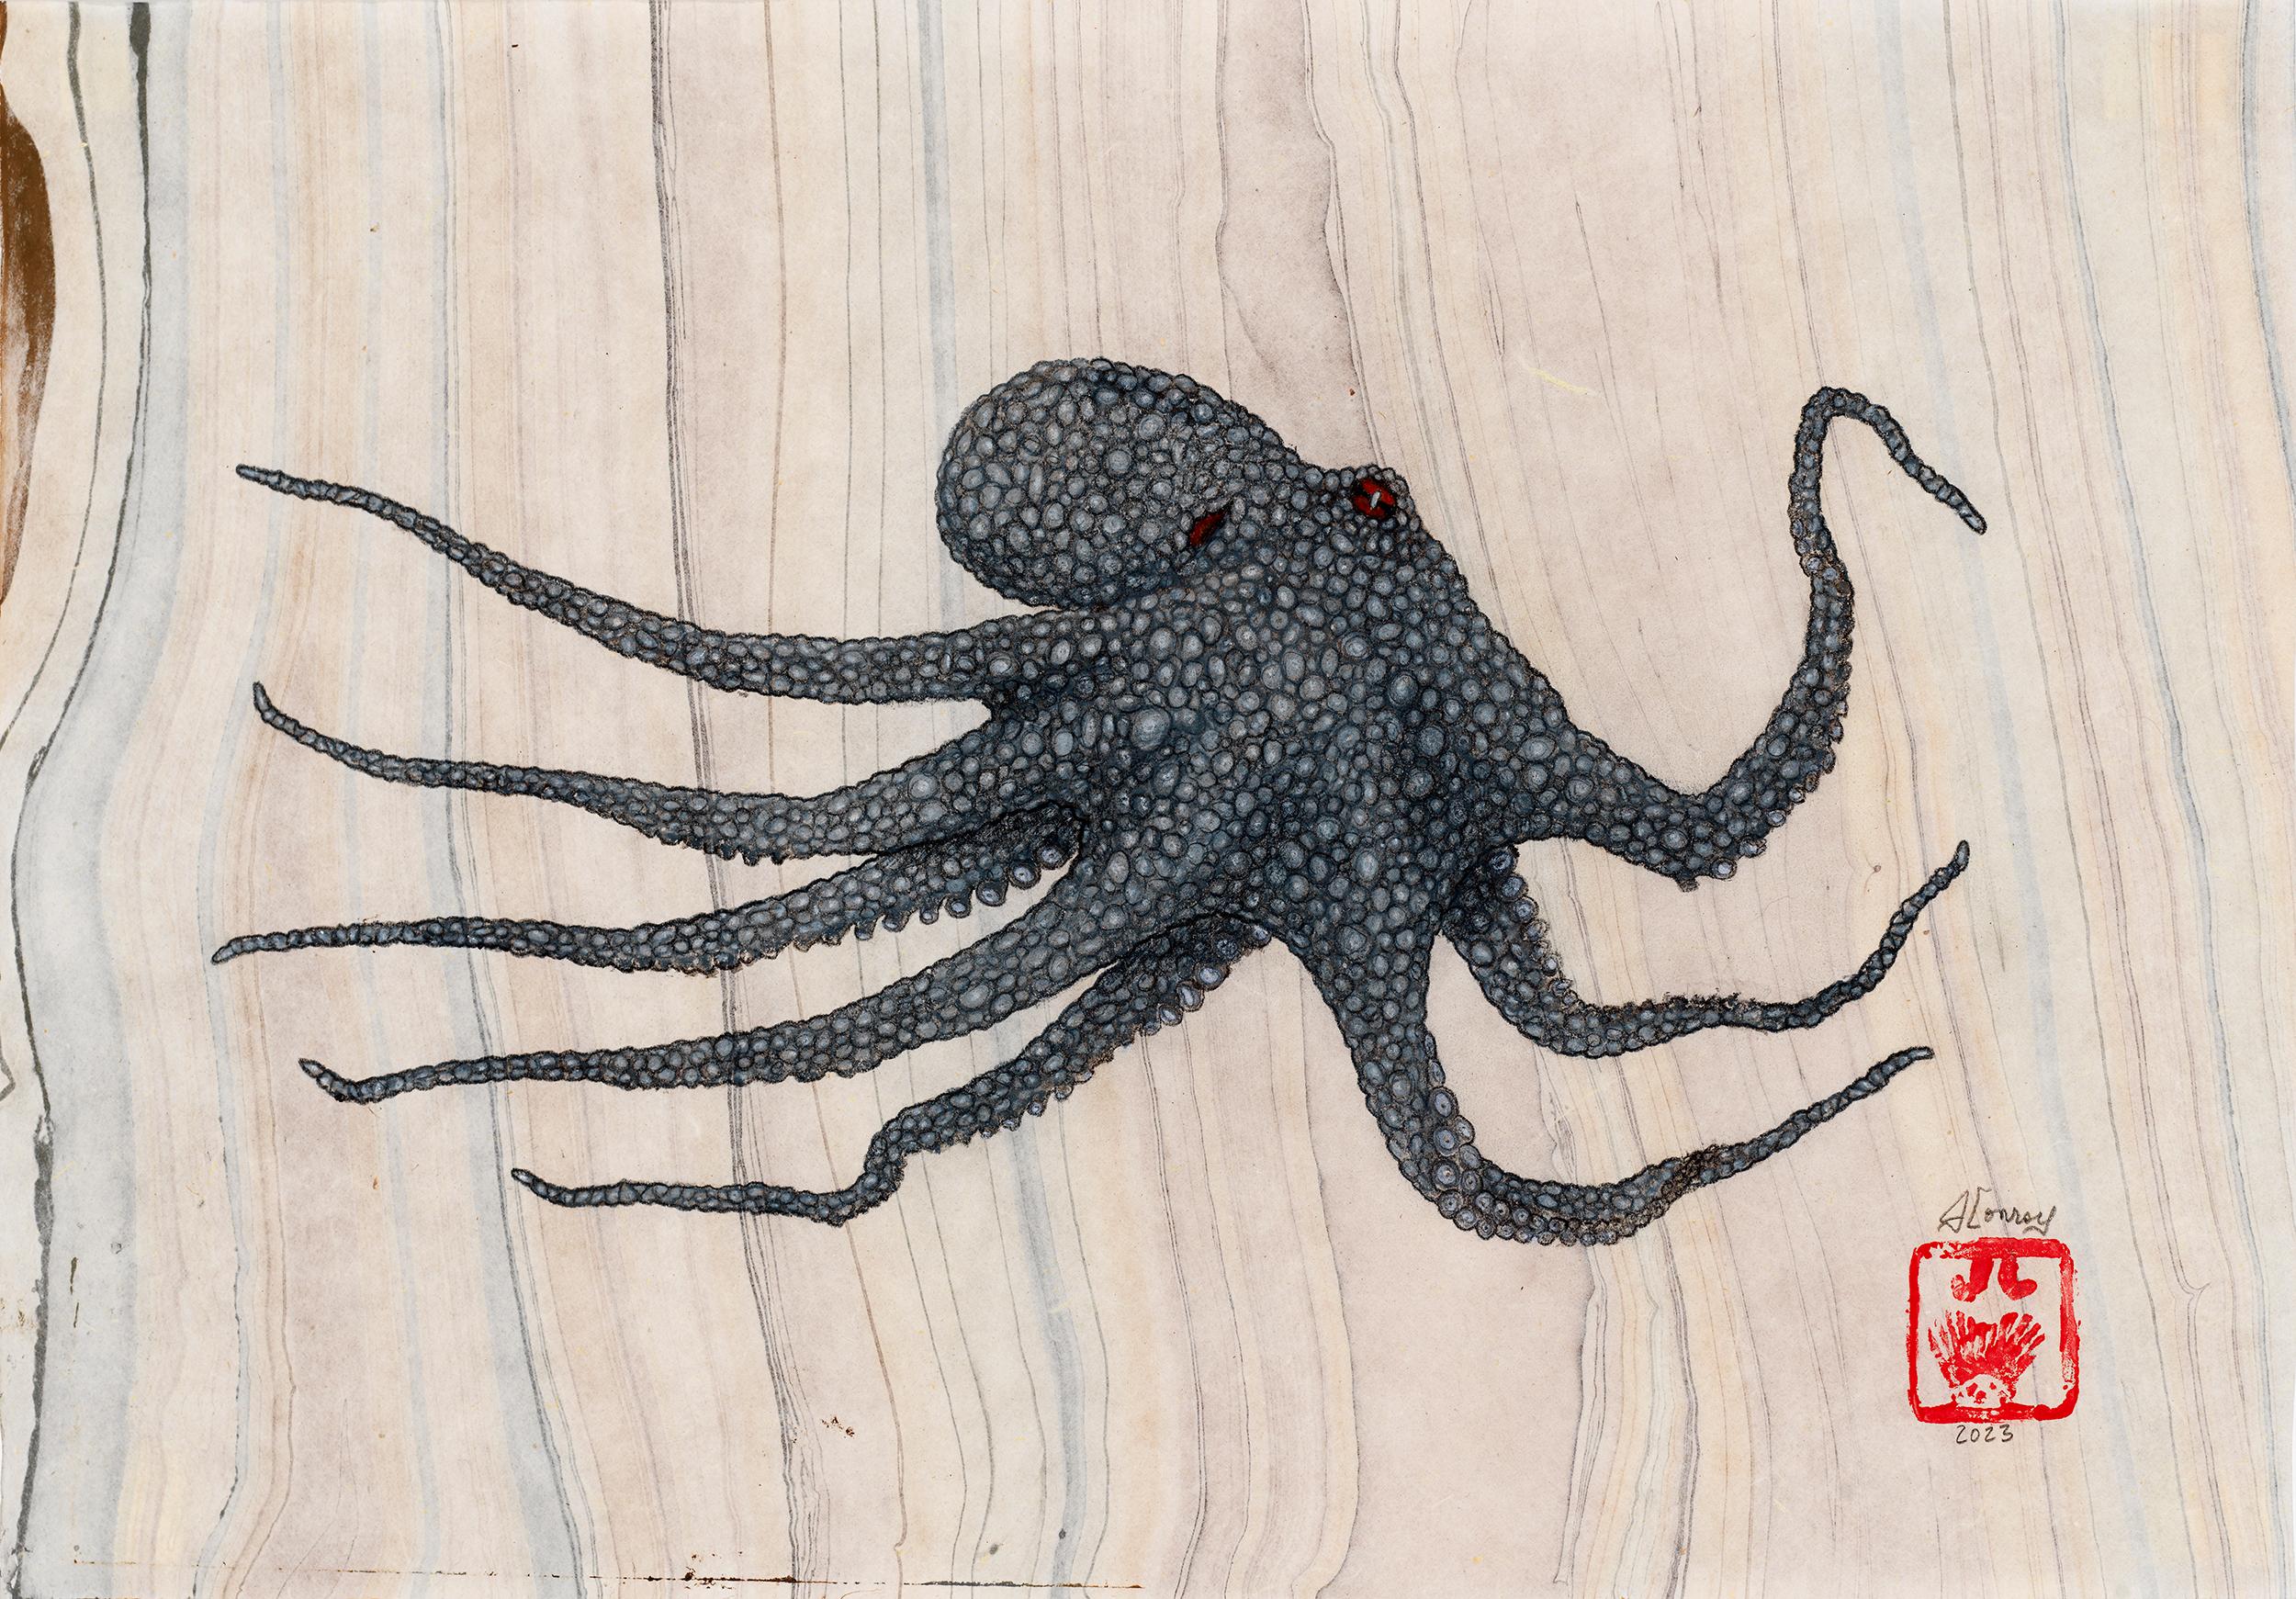 Peinture à l'encre Sumi de style Gyotaku représentant un octope 